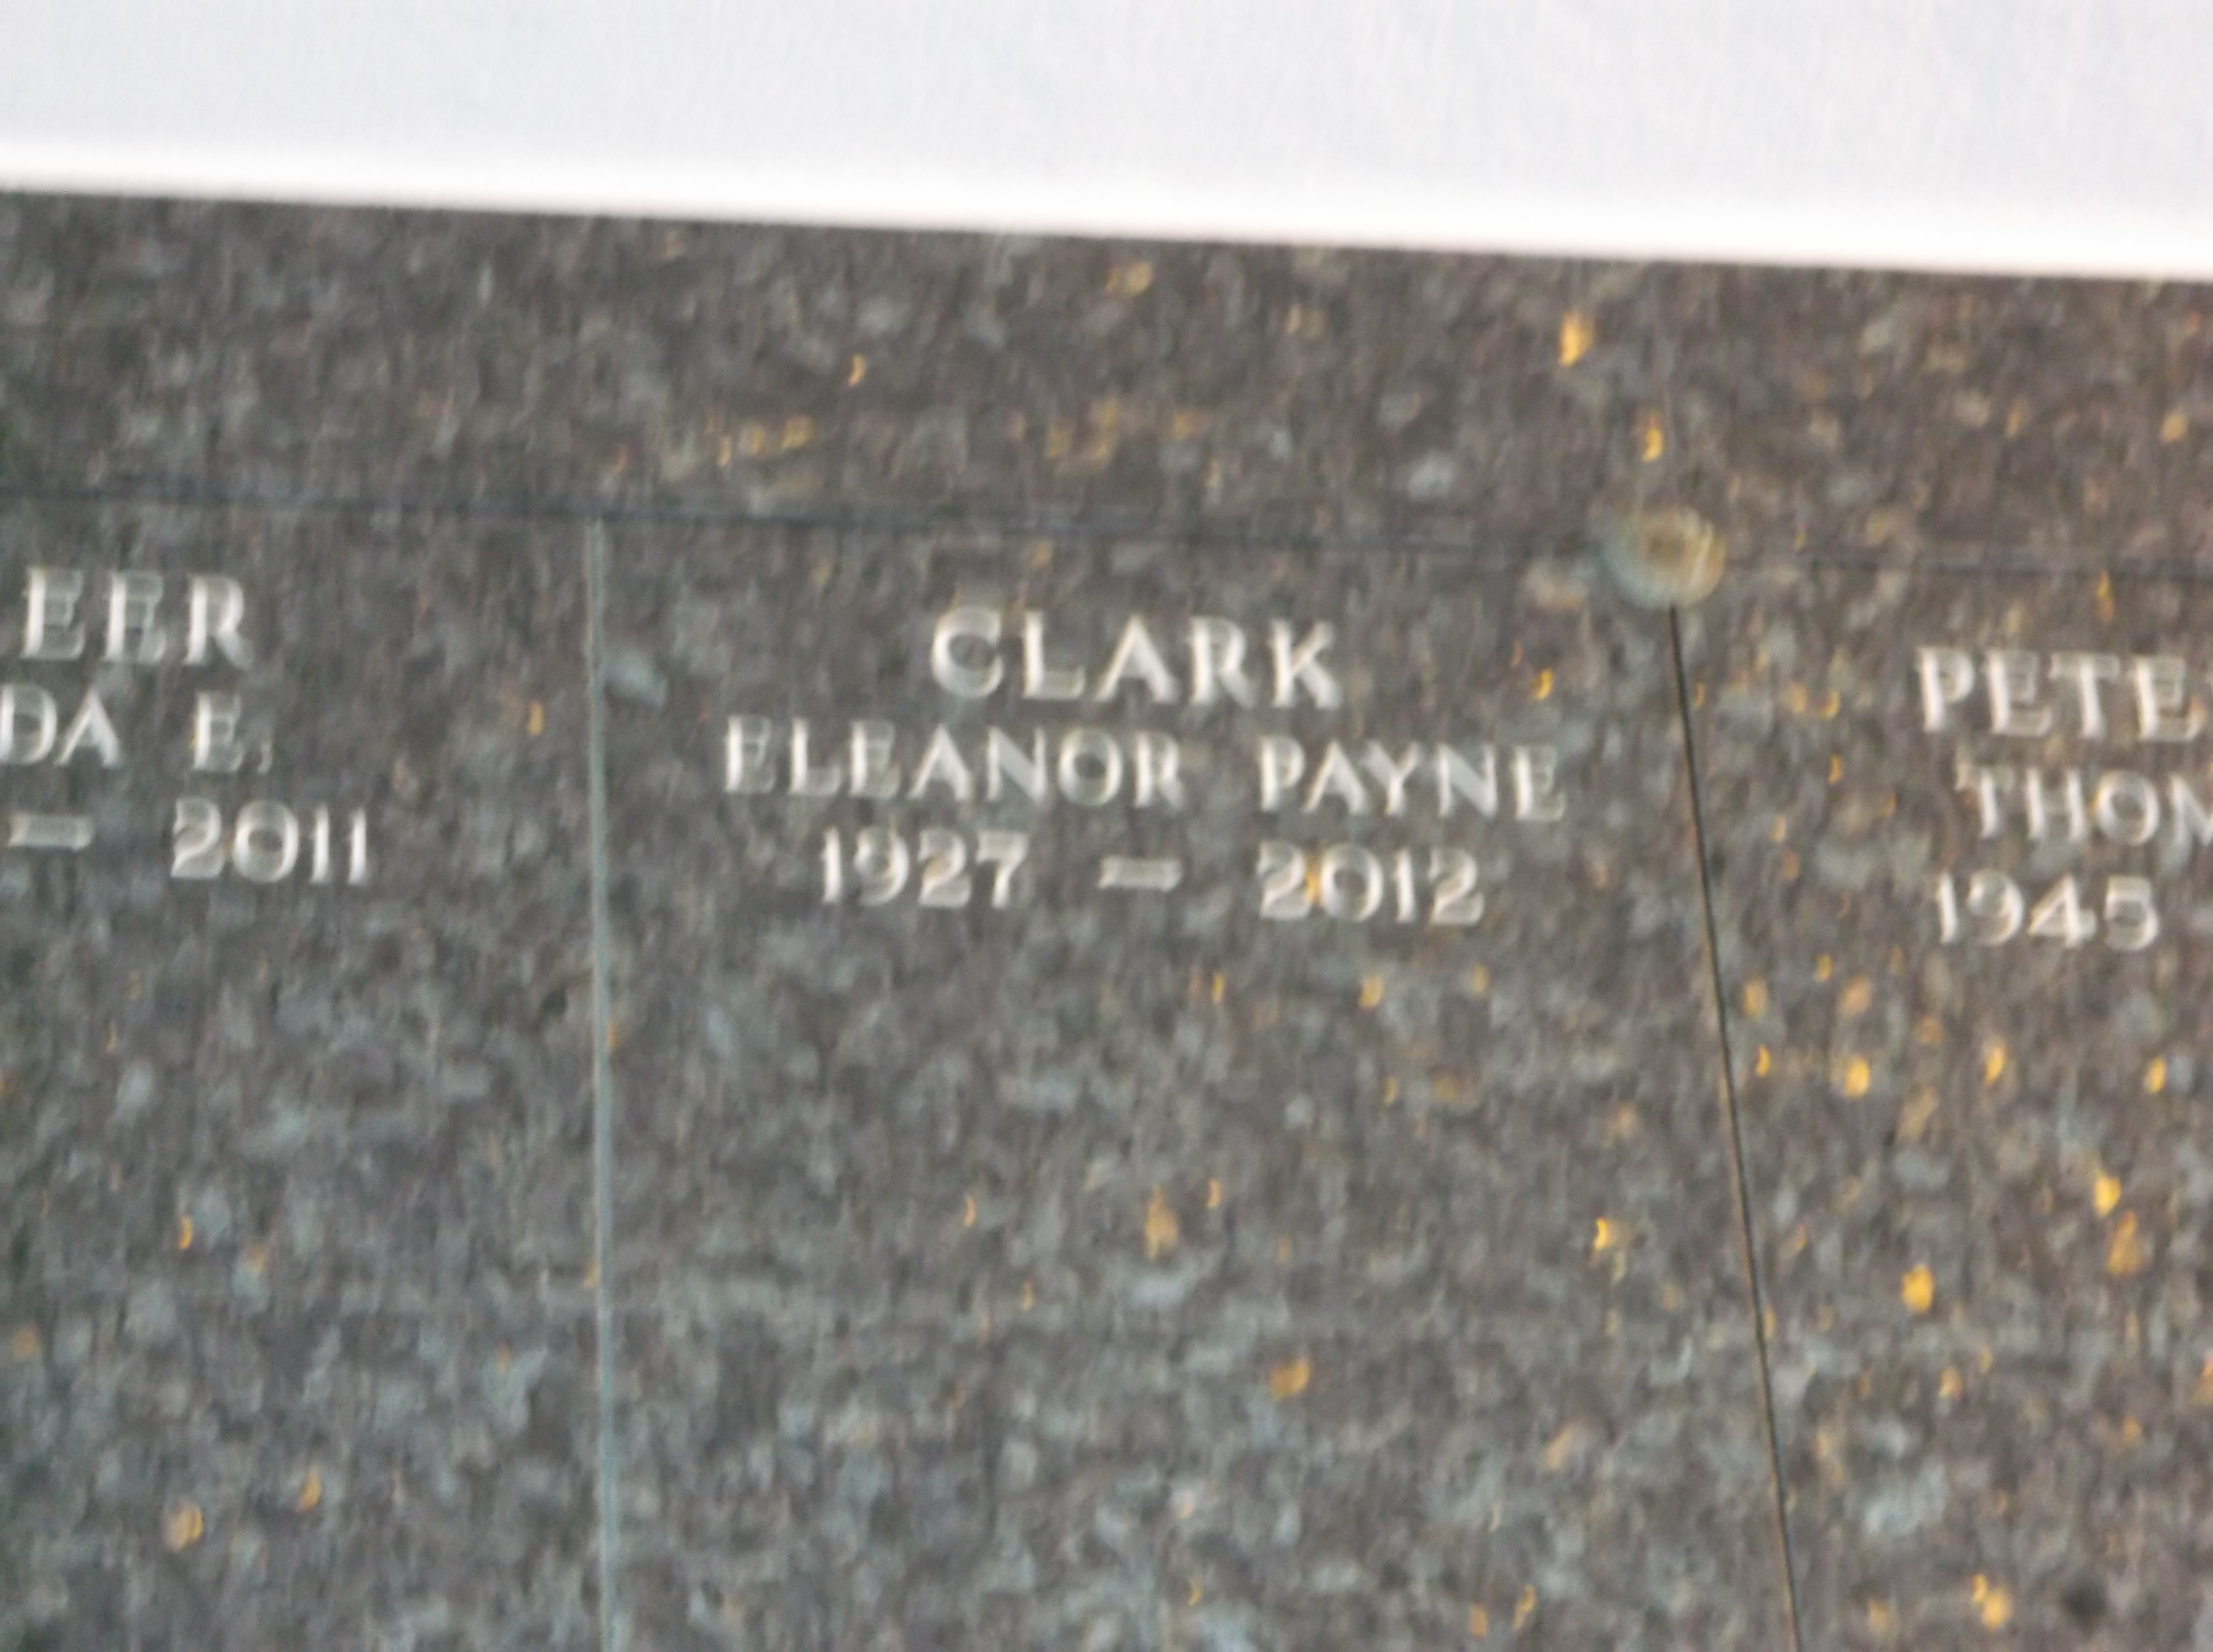 Eleanor Payne Clark